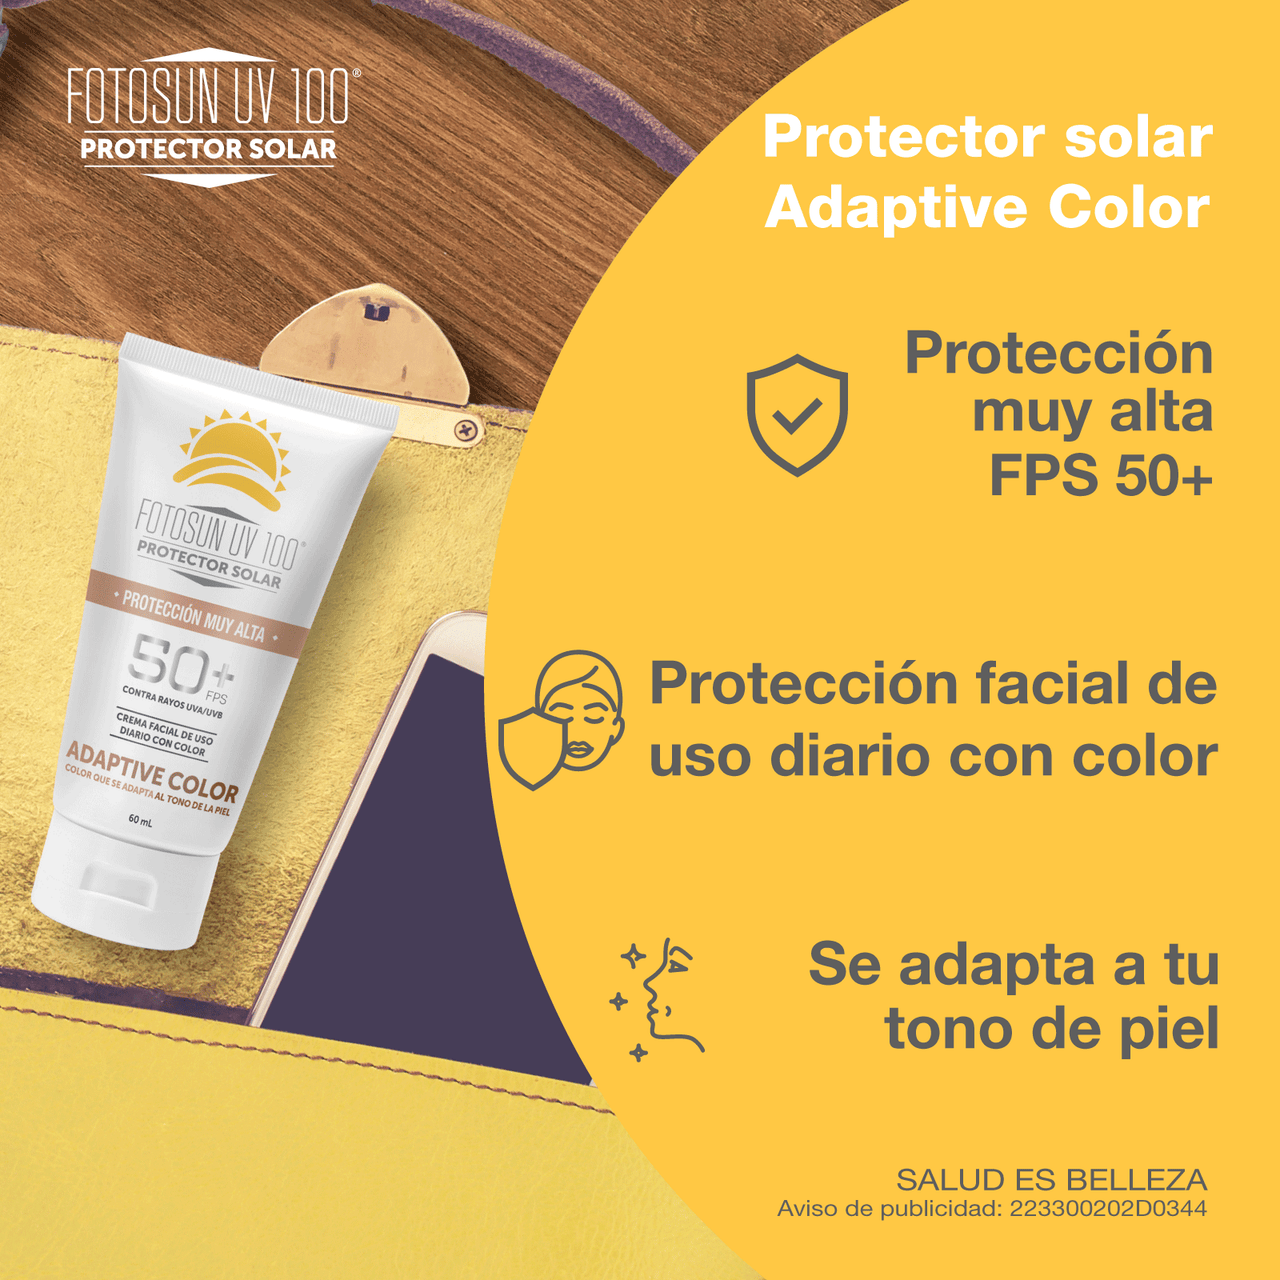 FOTOSUN UV 100 Protector Solar Adaptive Color